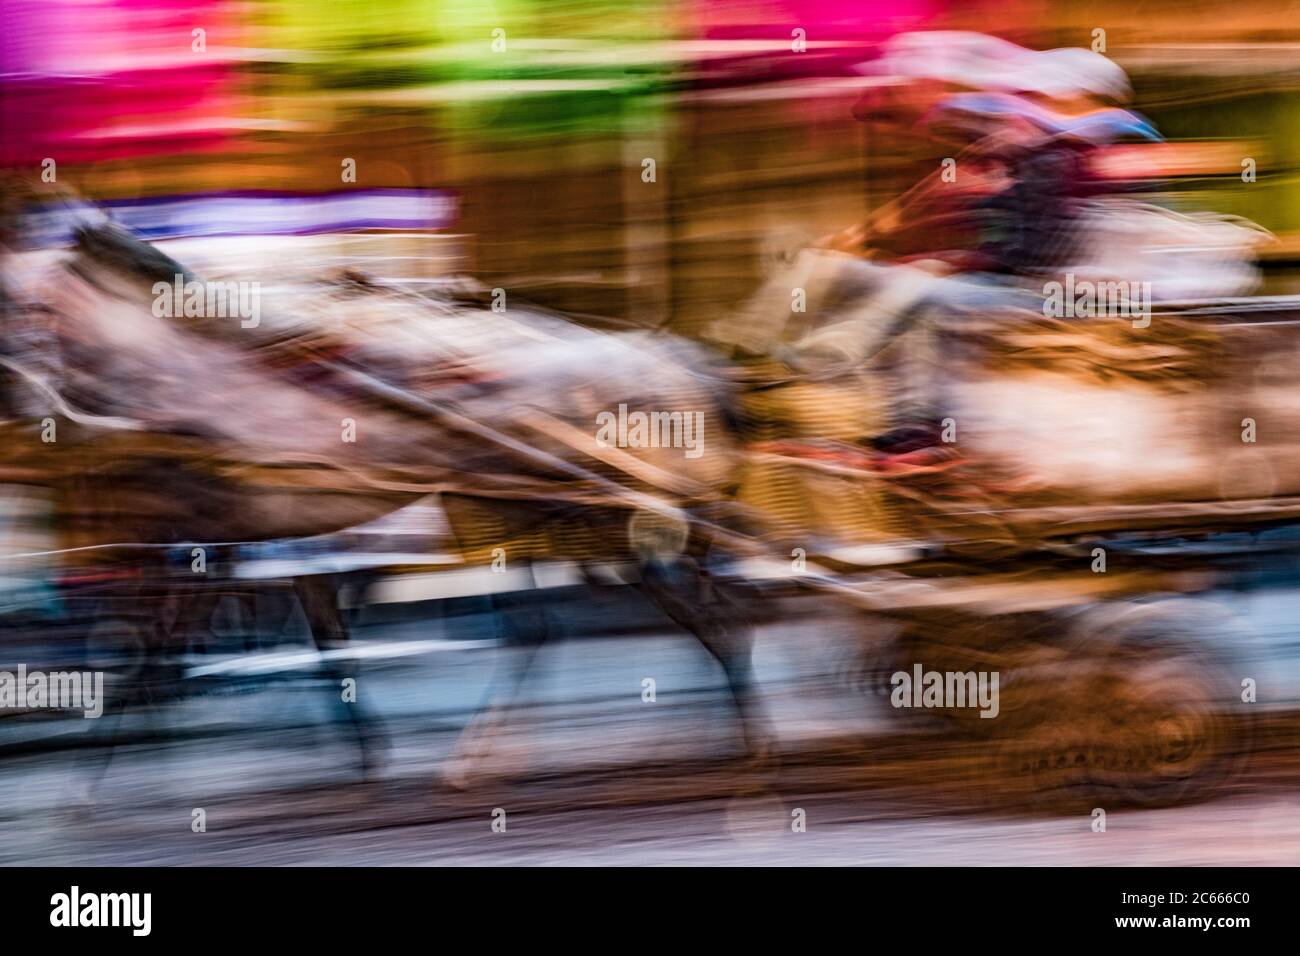 Horse carriage racing through a souk, Marrakech, Morocco Stock Photo